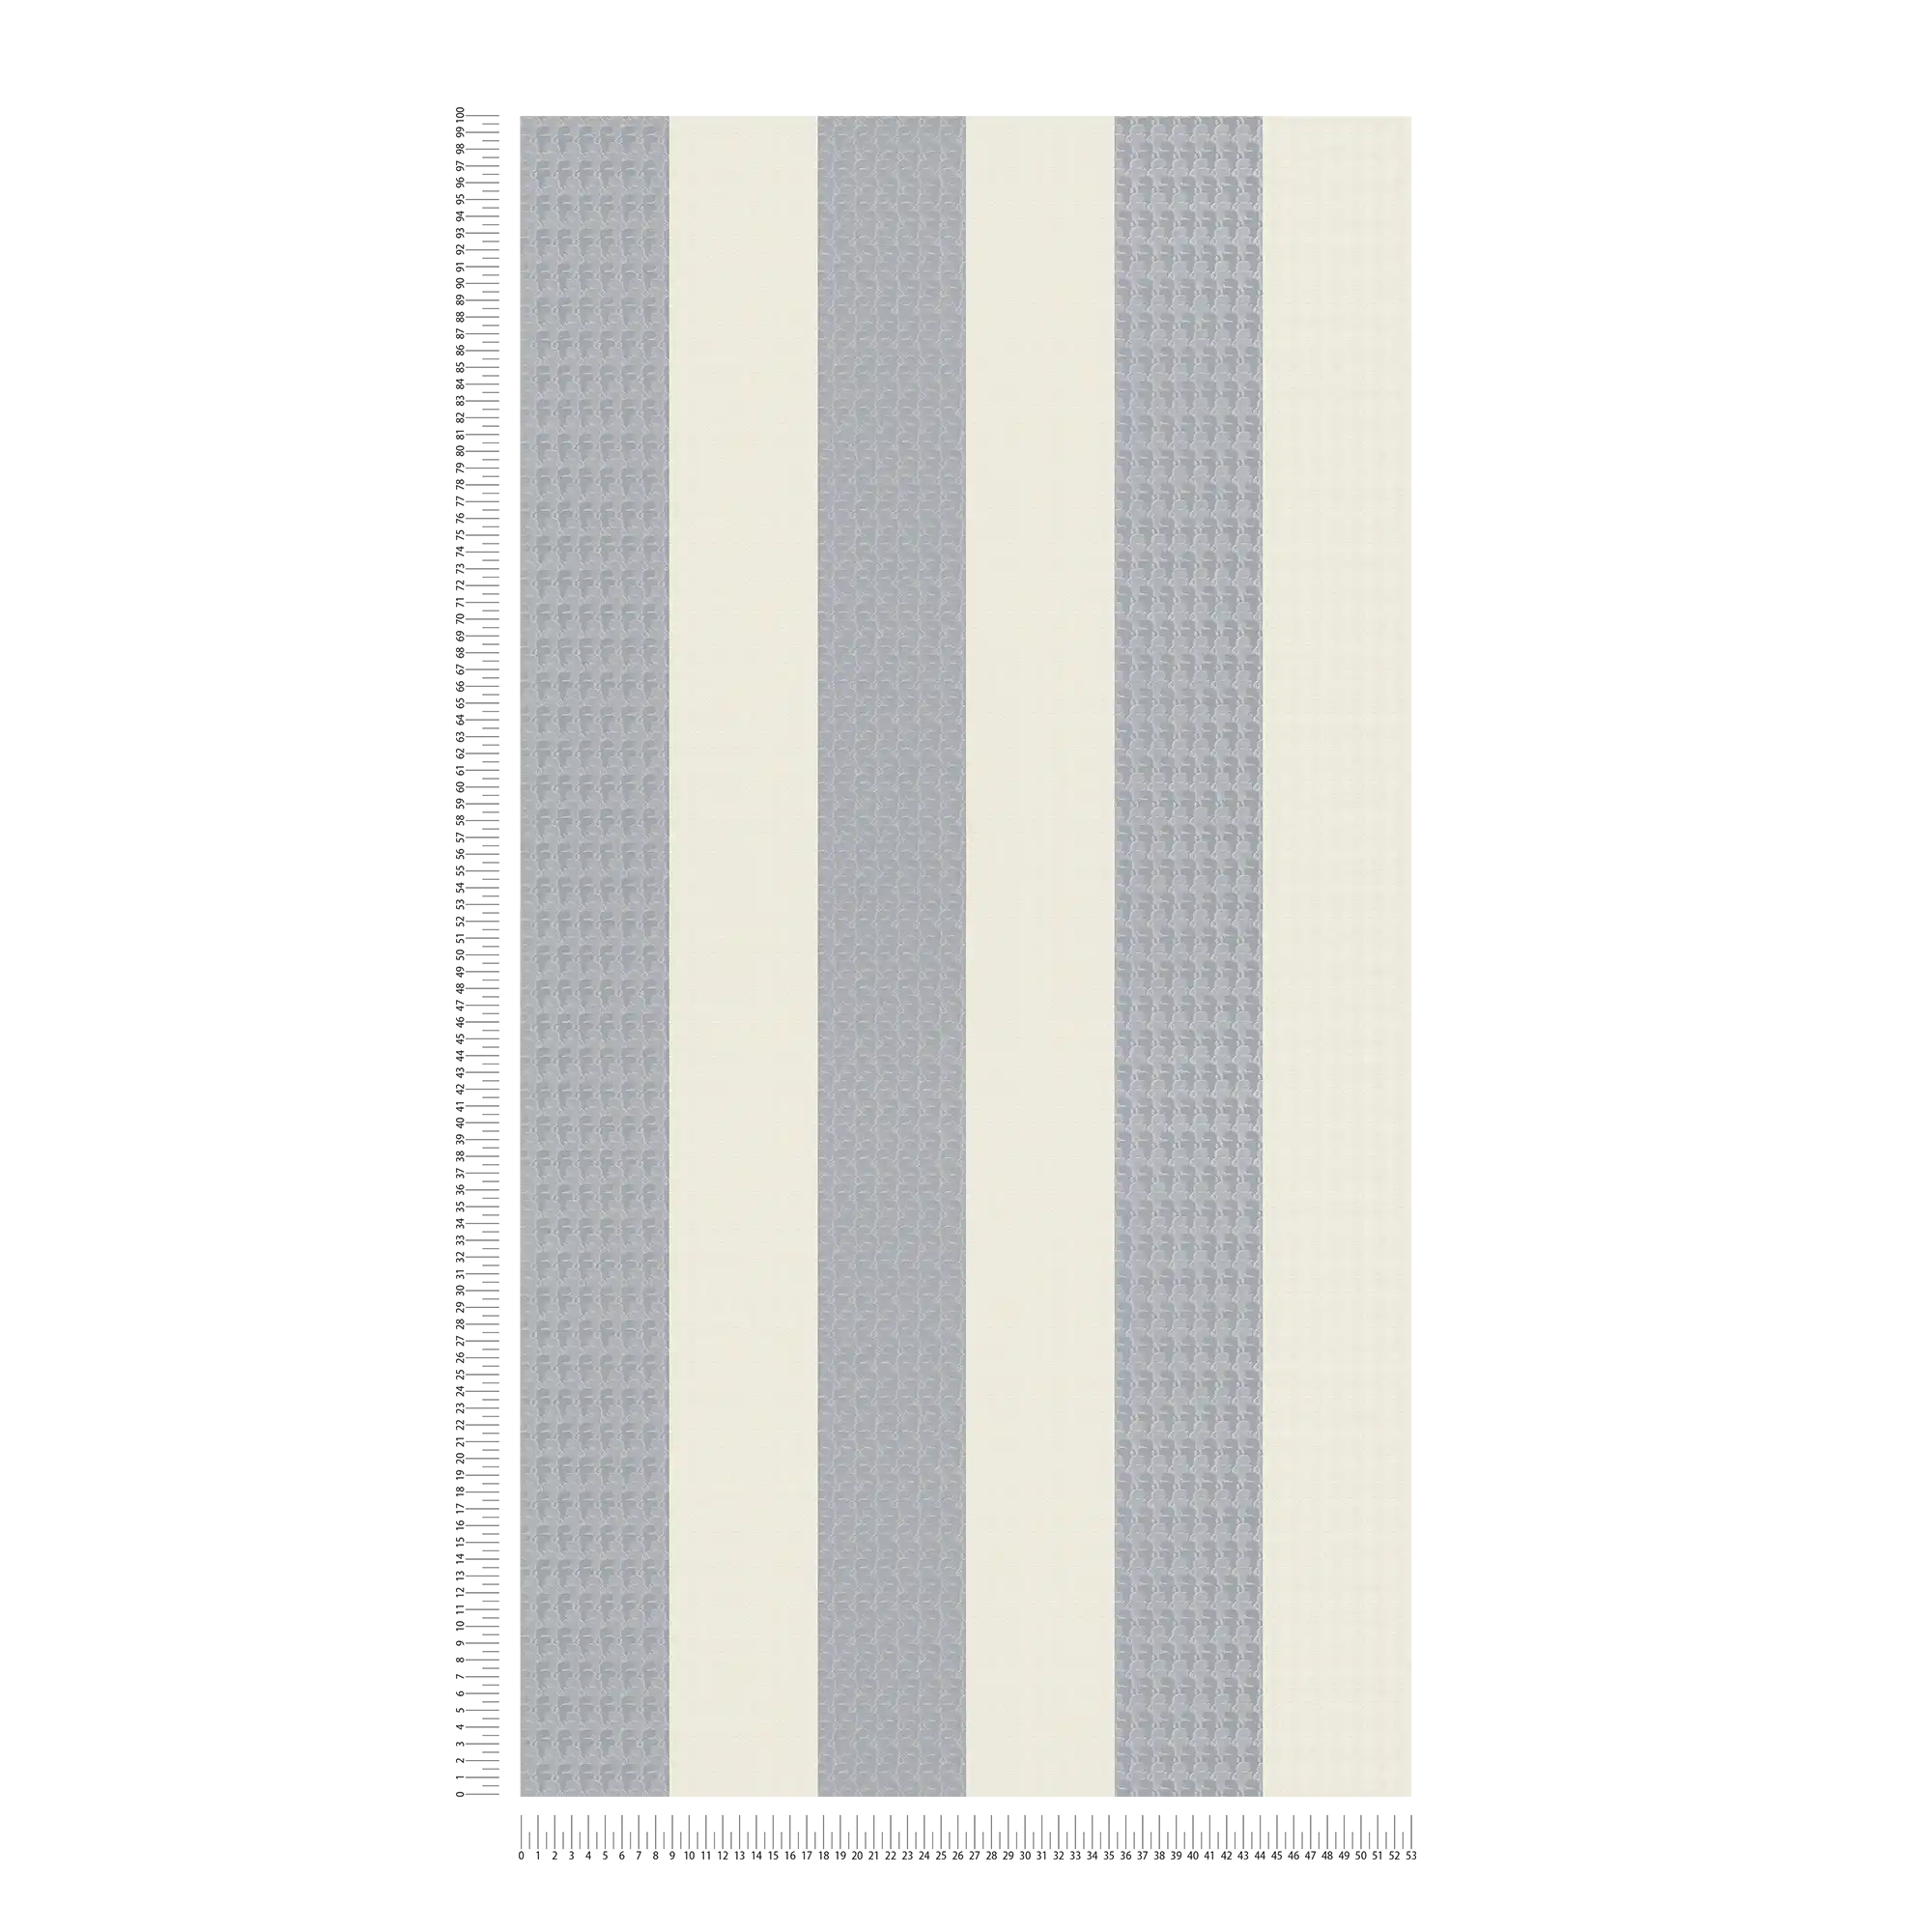             Papier peint Karl LAGERFELD rayures & motifs texturés - crème, gris
        